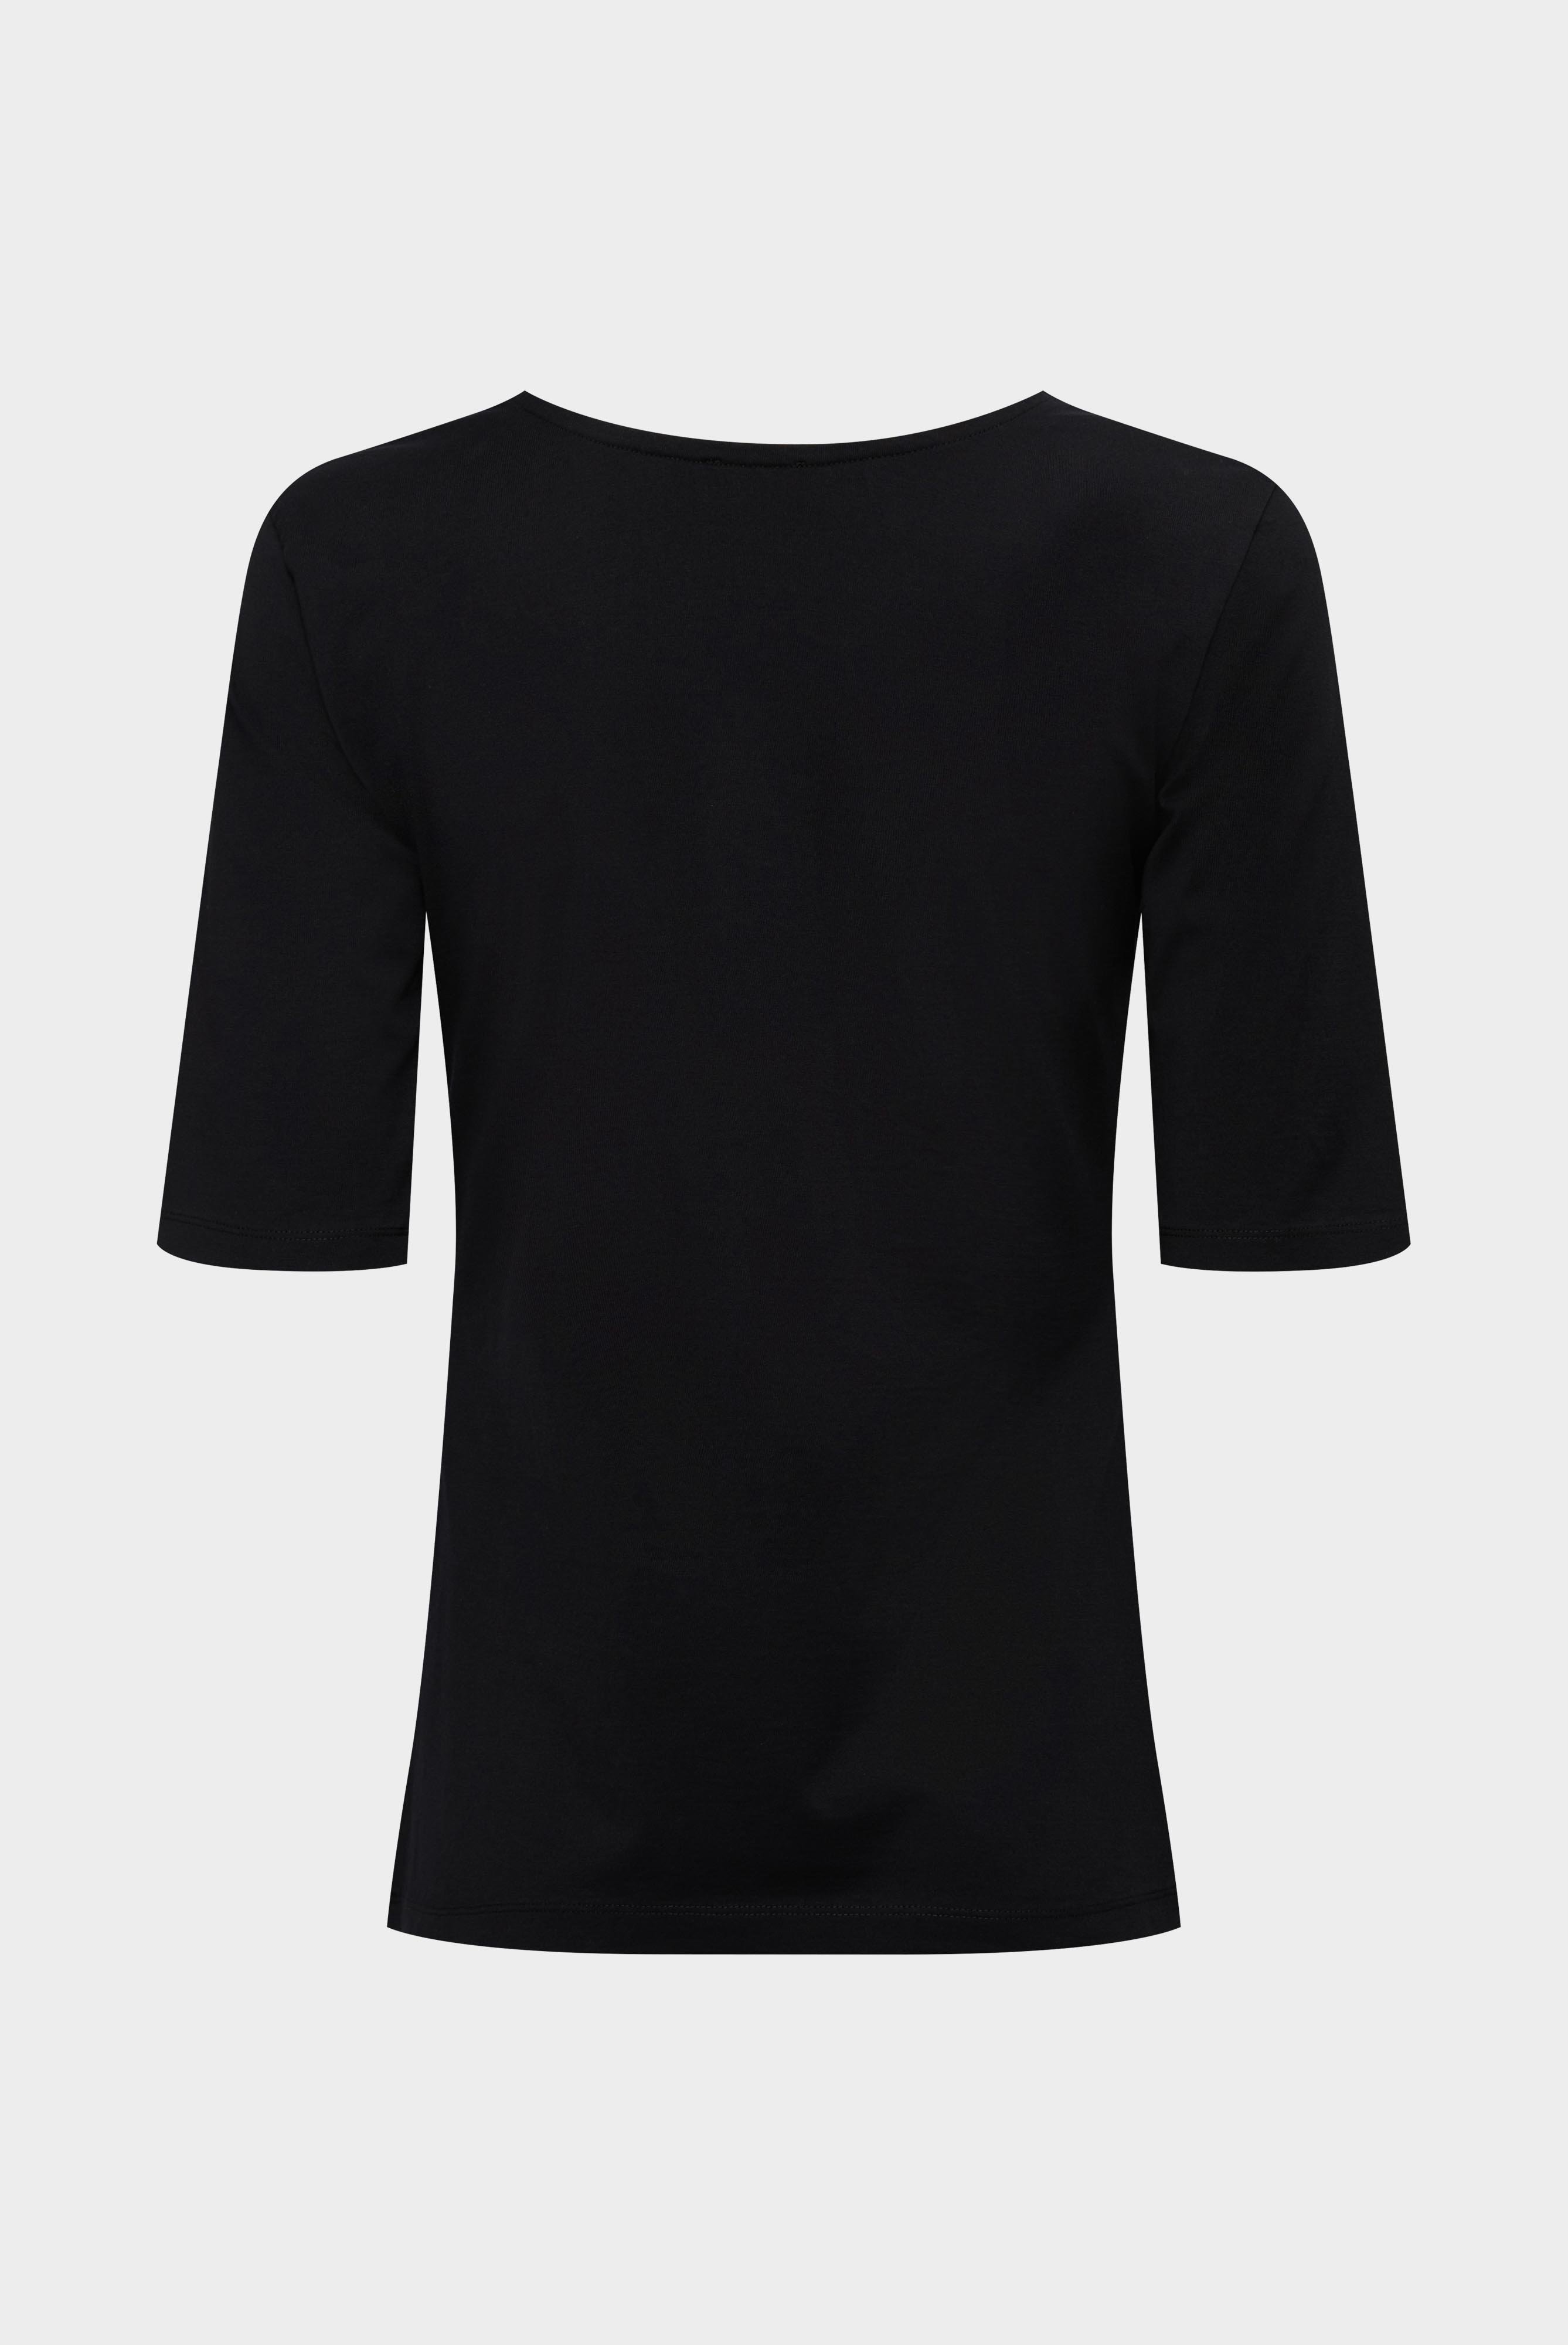 Tops & T-Shirts+Urban Jersey Wide Neck T-Shirt+05.2911..Z20044.099.M